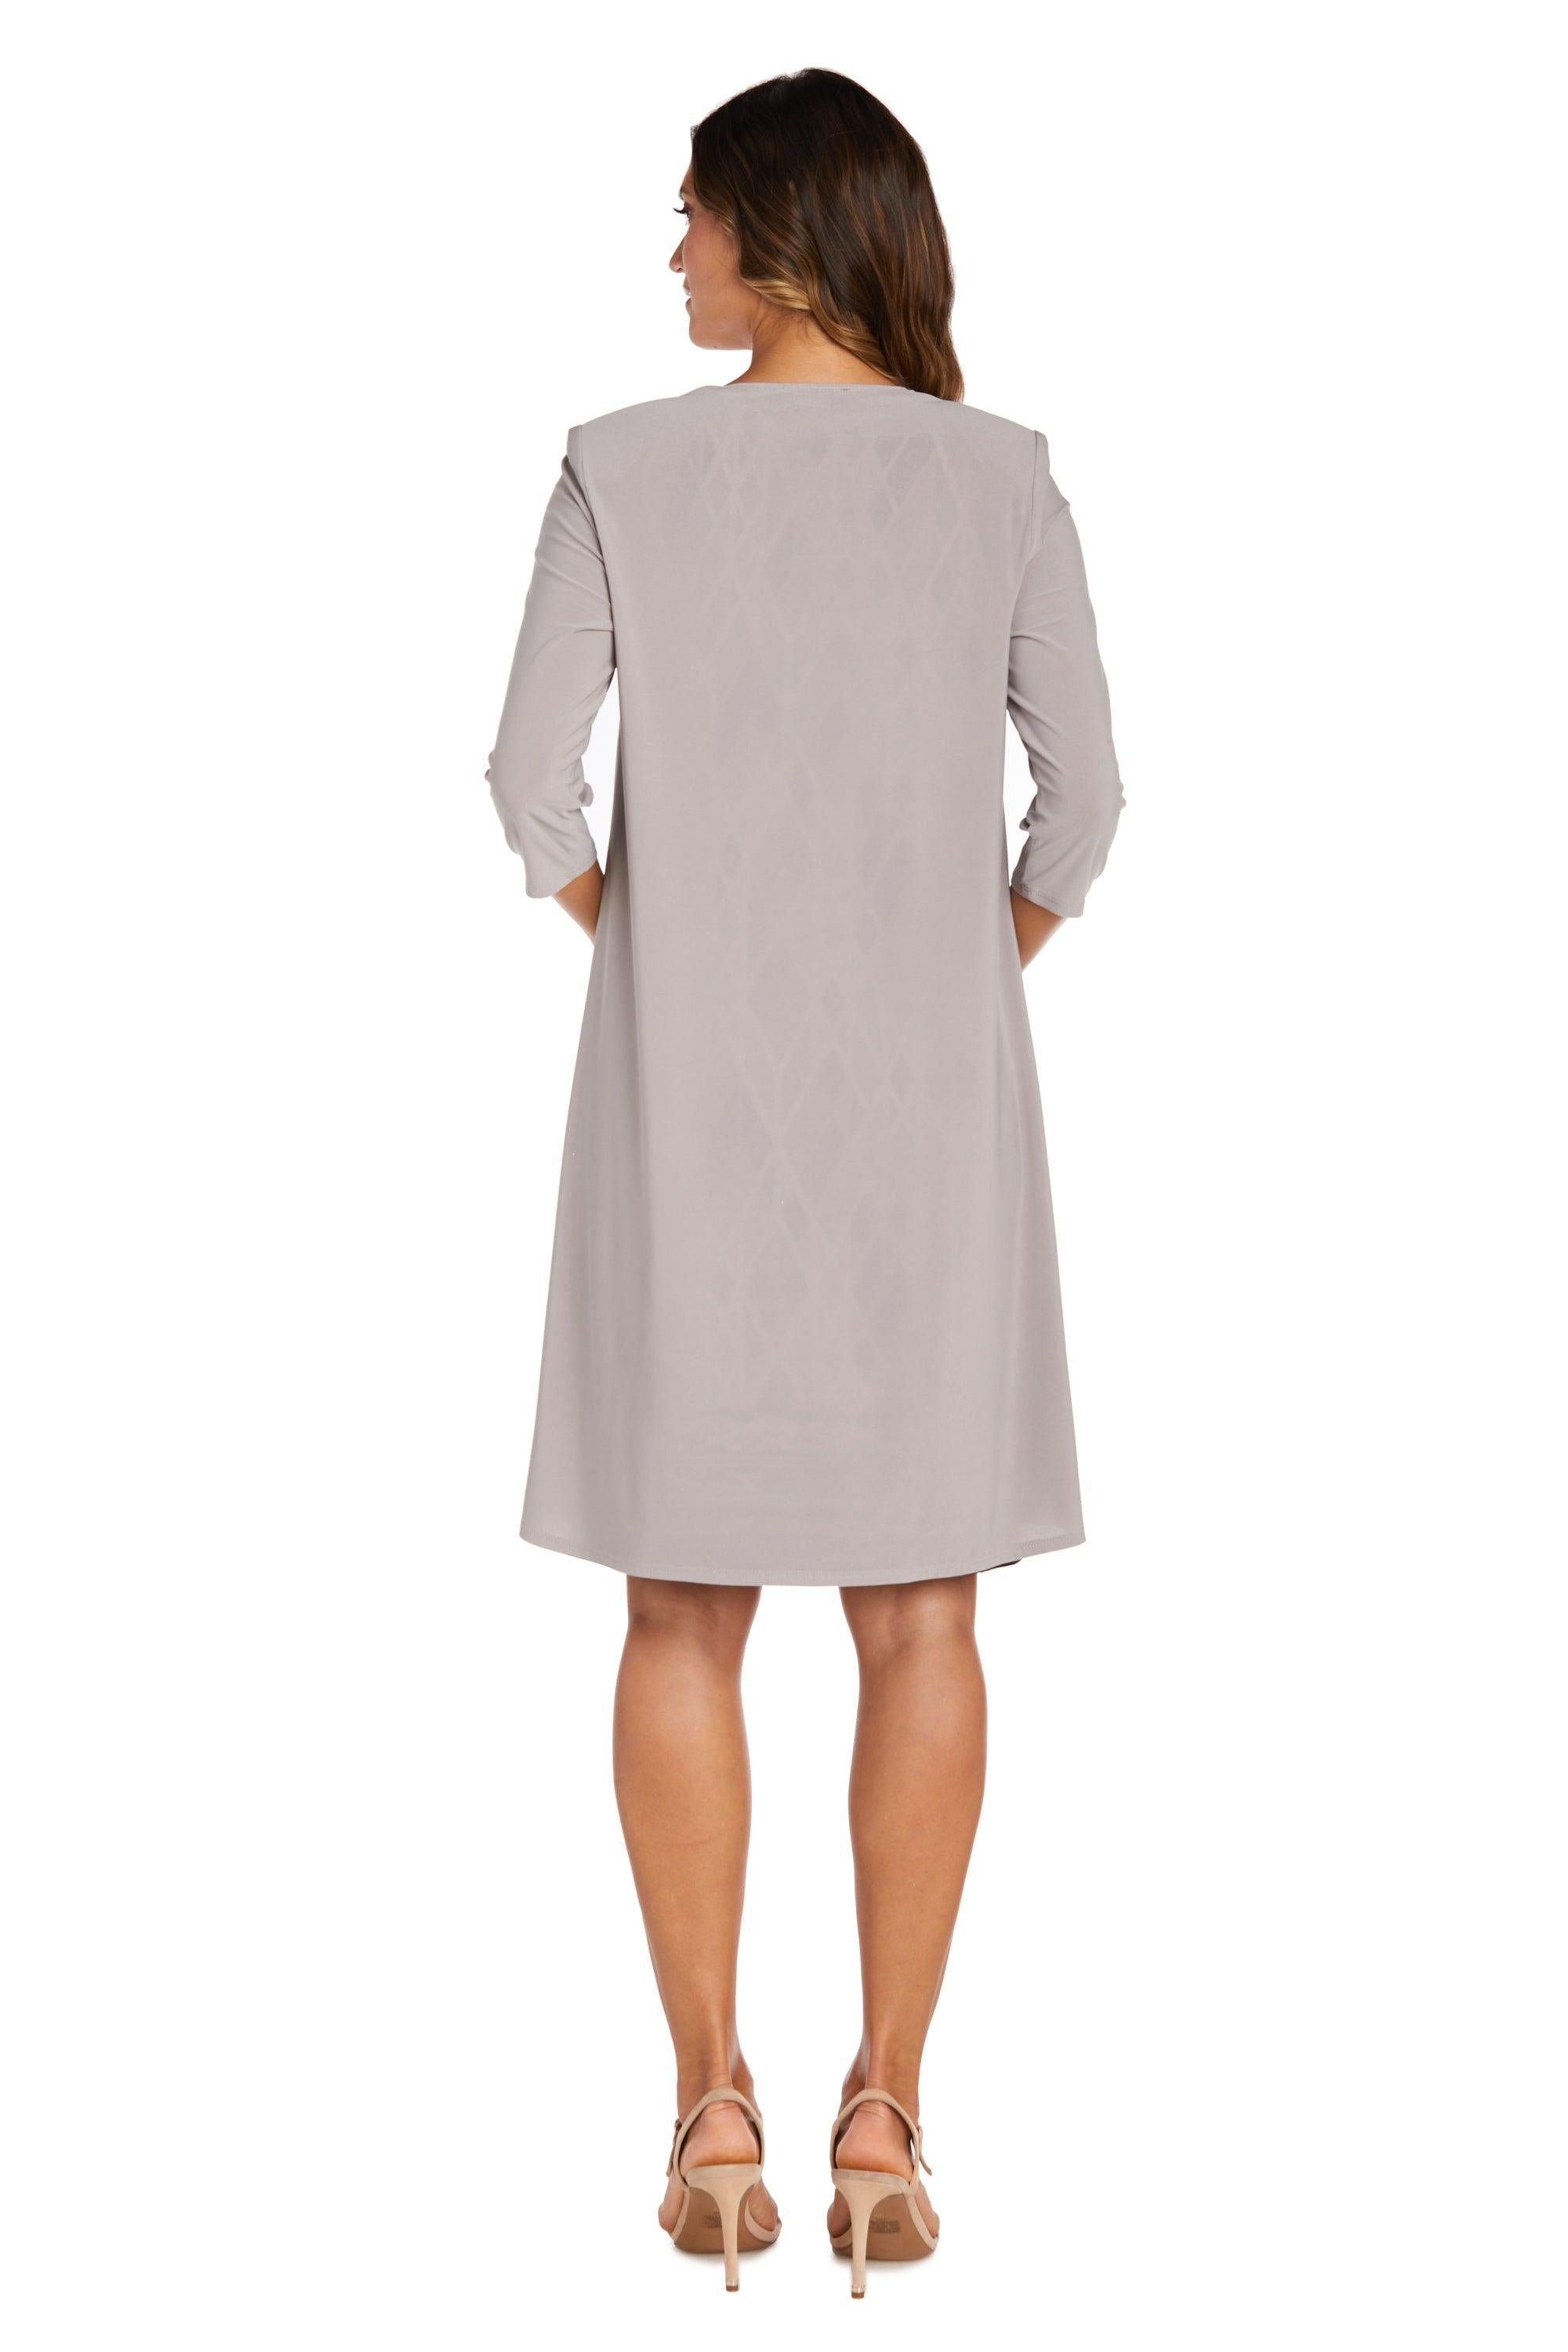 R&M Richards Short Petite Print Jacket Dress 7987P - The Dress Outlet